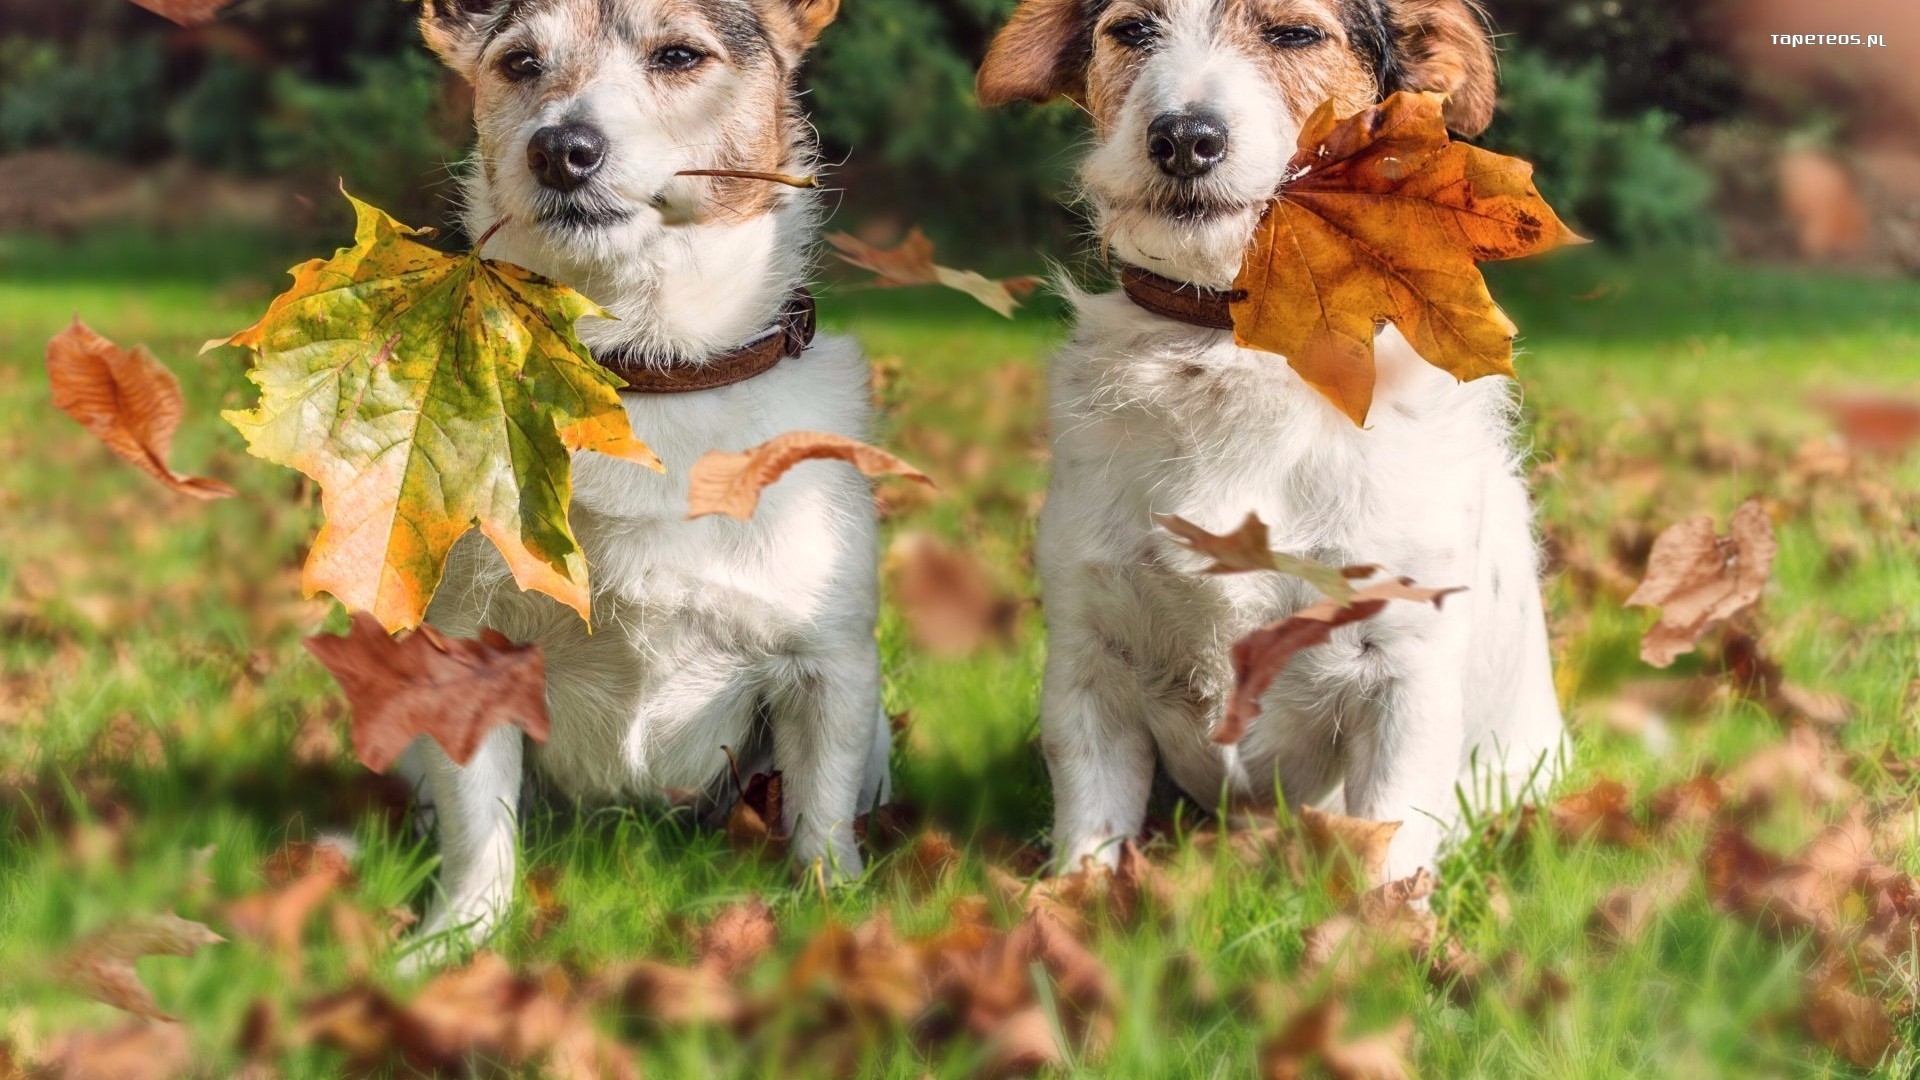 Jack Russell Terrier 006 Psy, Zwierzeta, Liscie, Trawa, Jesien